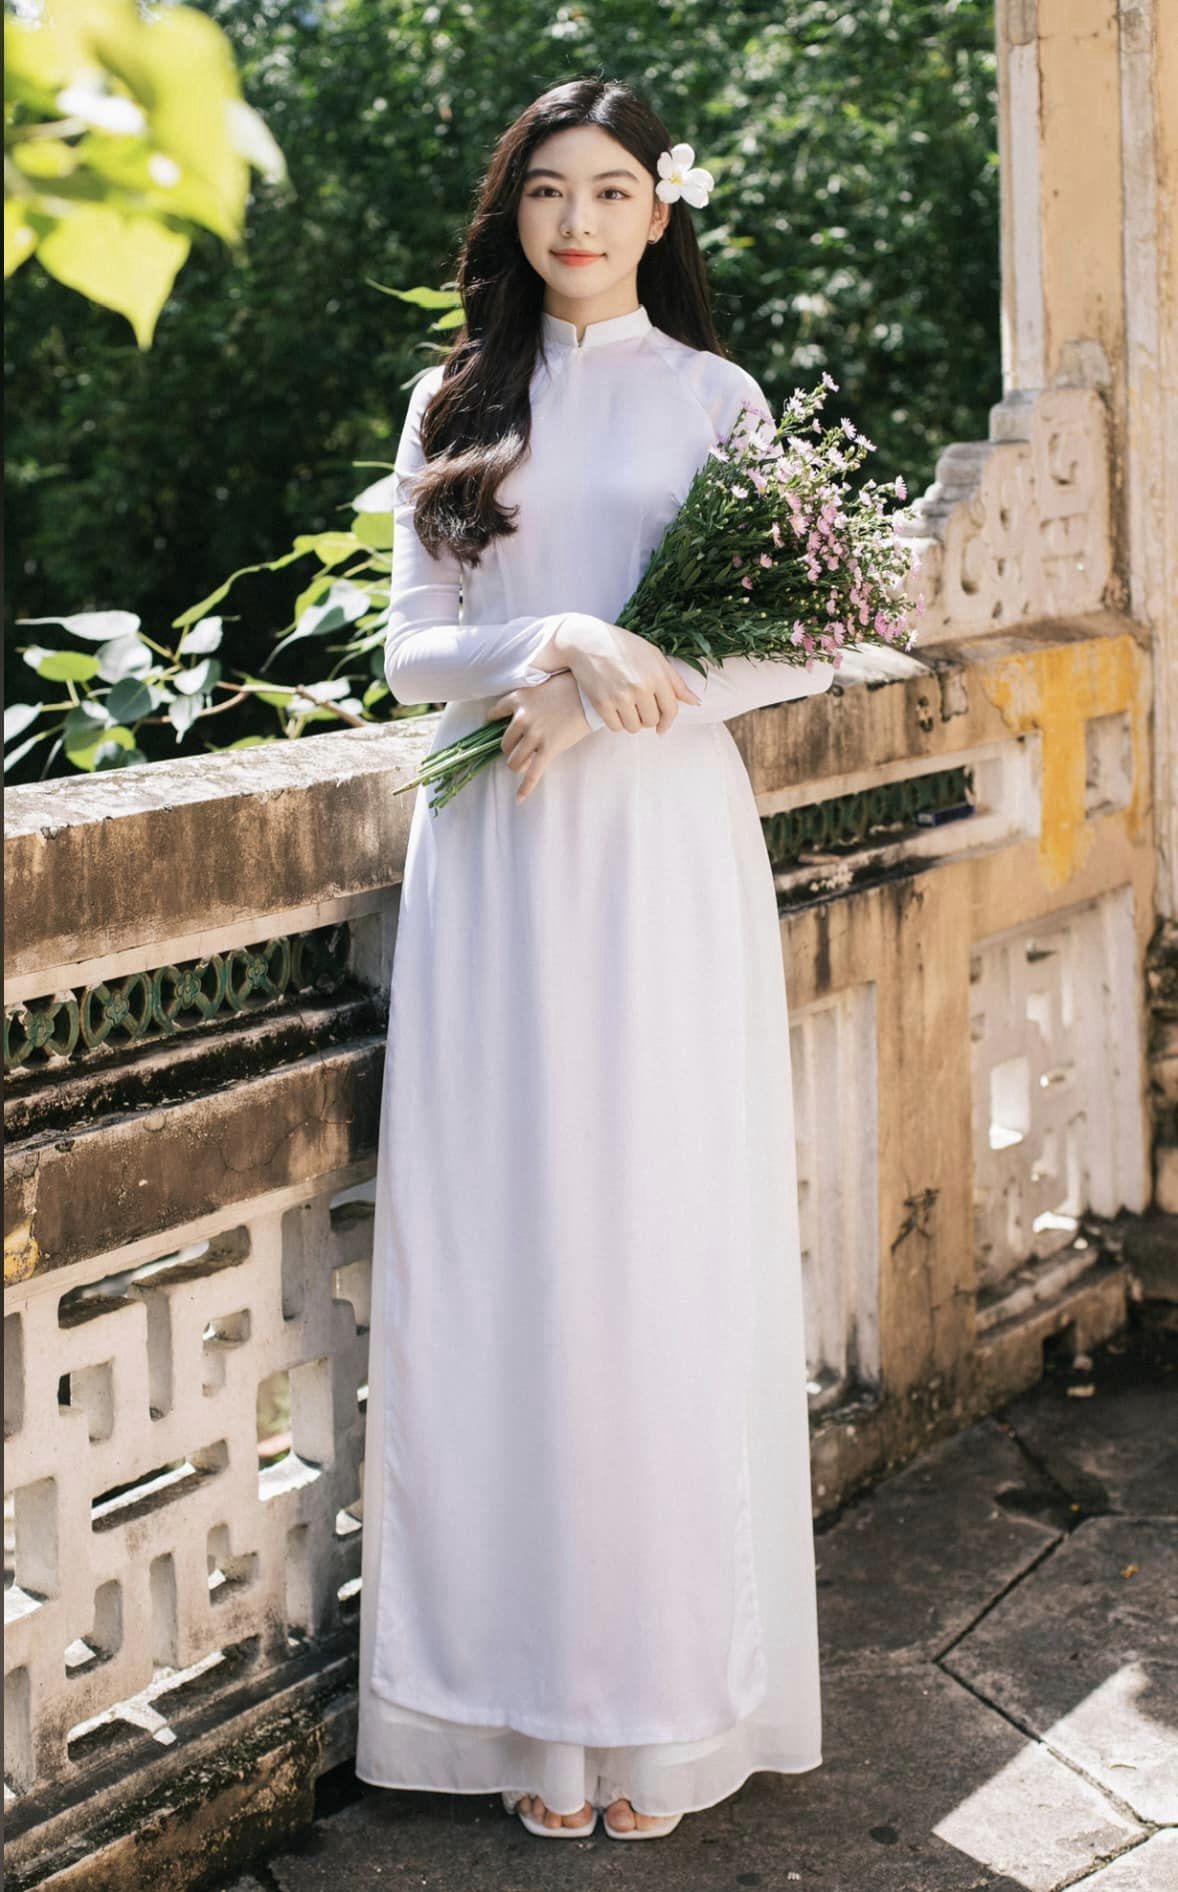 MC Quyền Linh đi dép tổ ong, xách váy cho vợ con chụp hình tại Hàn Quốc - ảnh 5